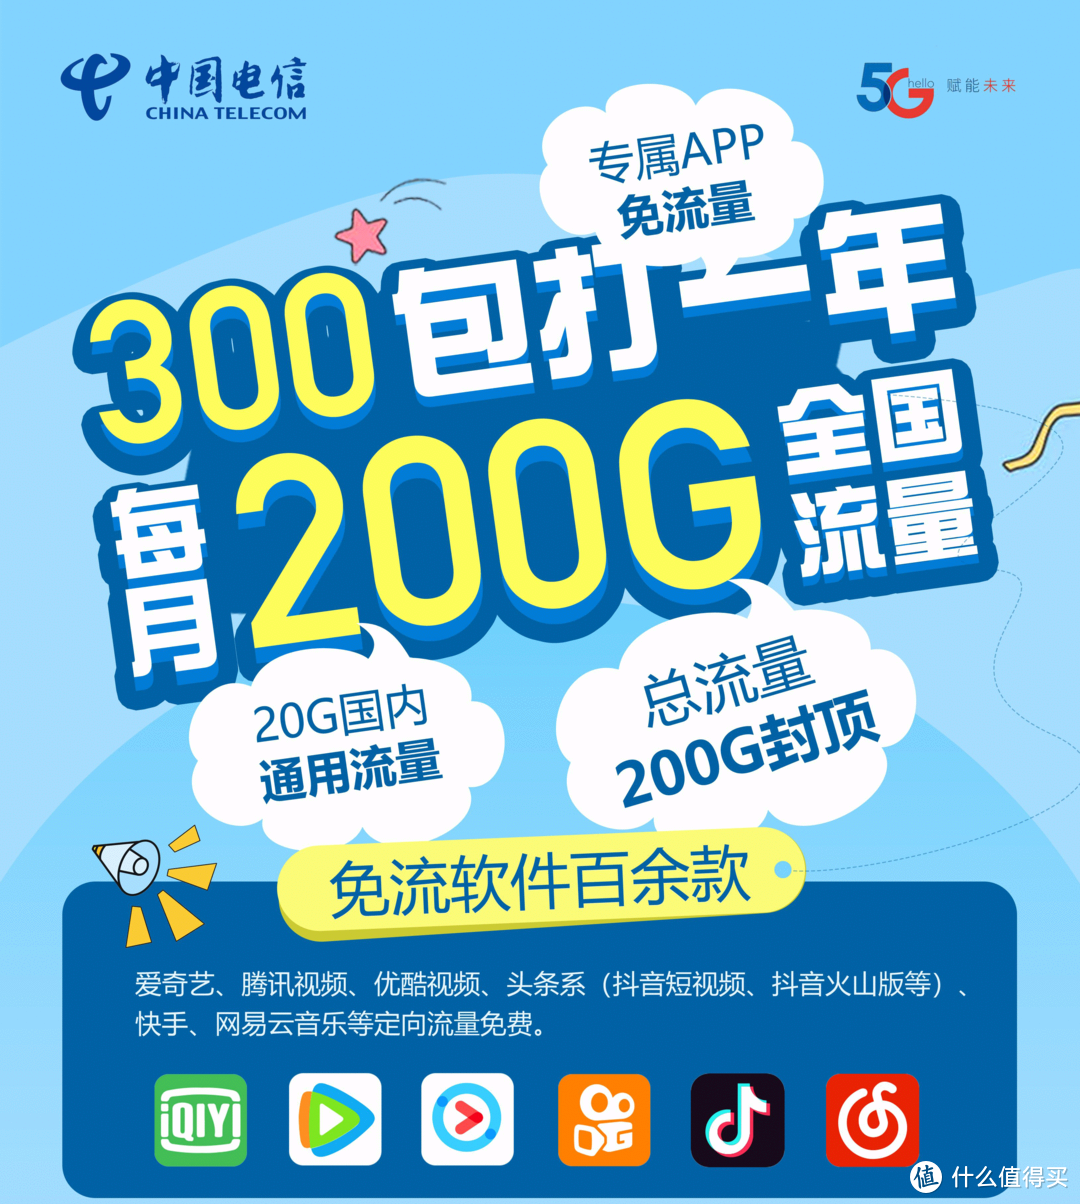 2020年北京三家运营商校园卡5G套餐对比